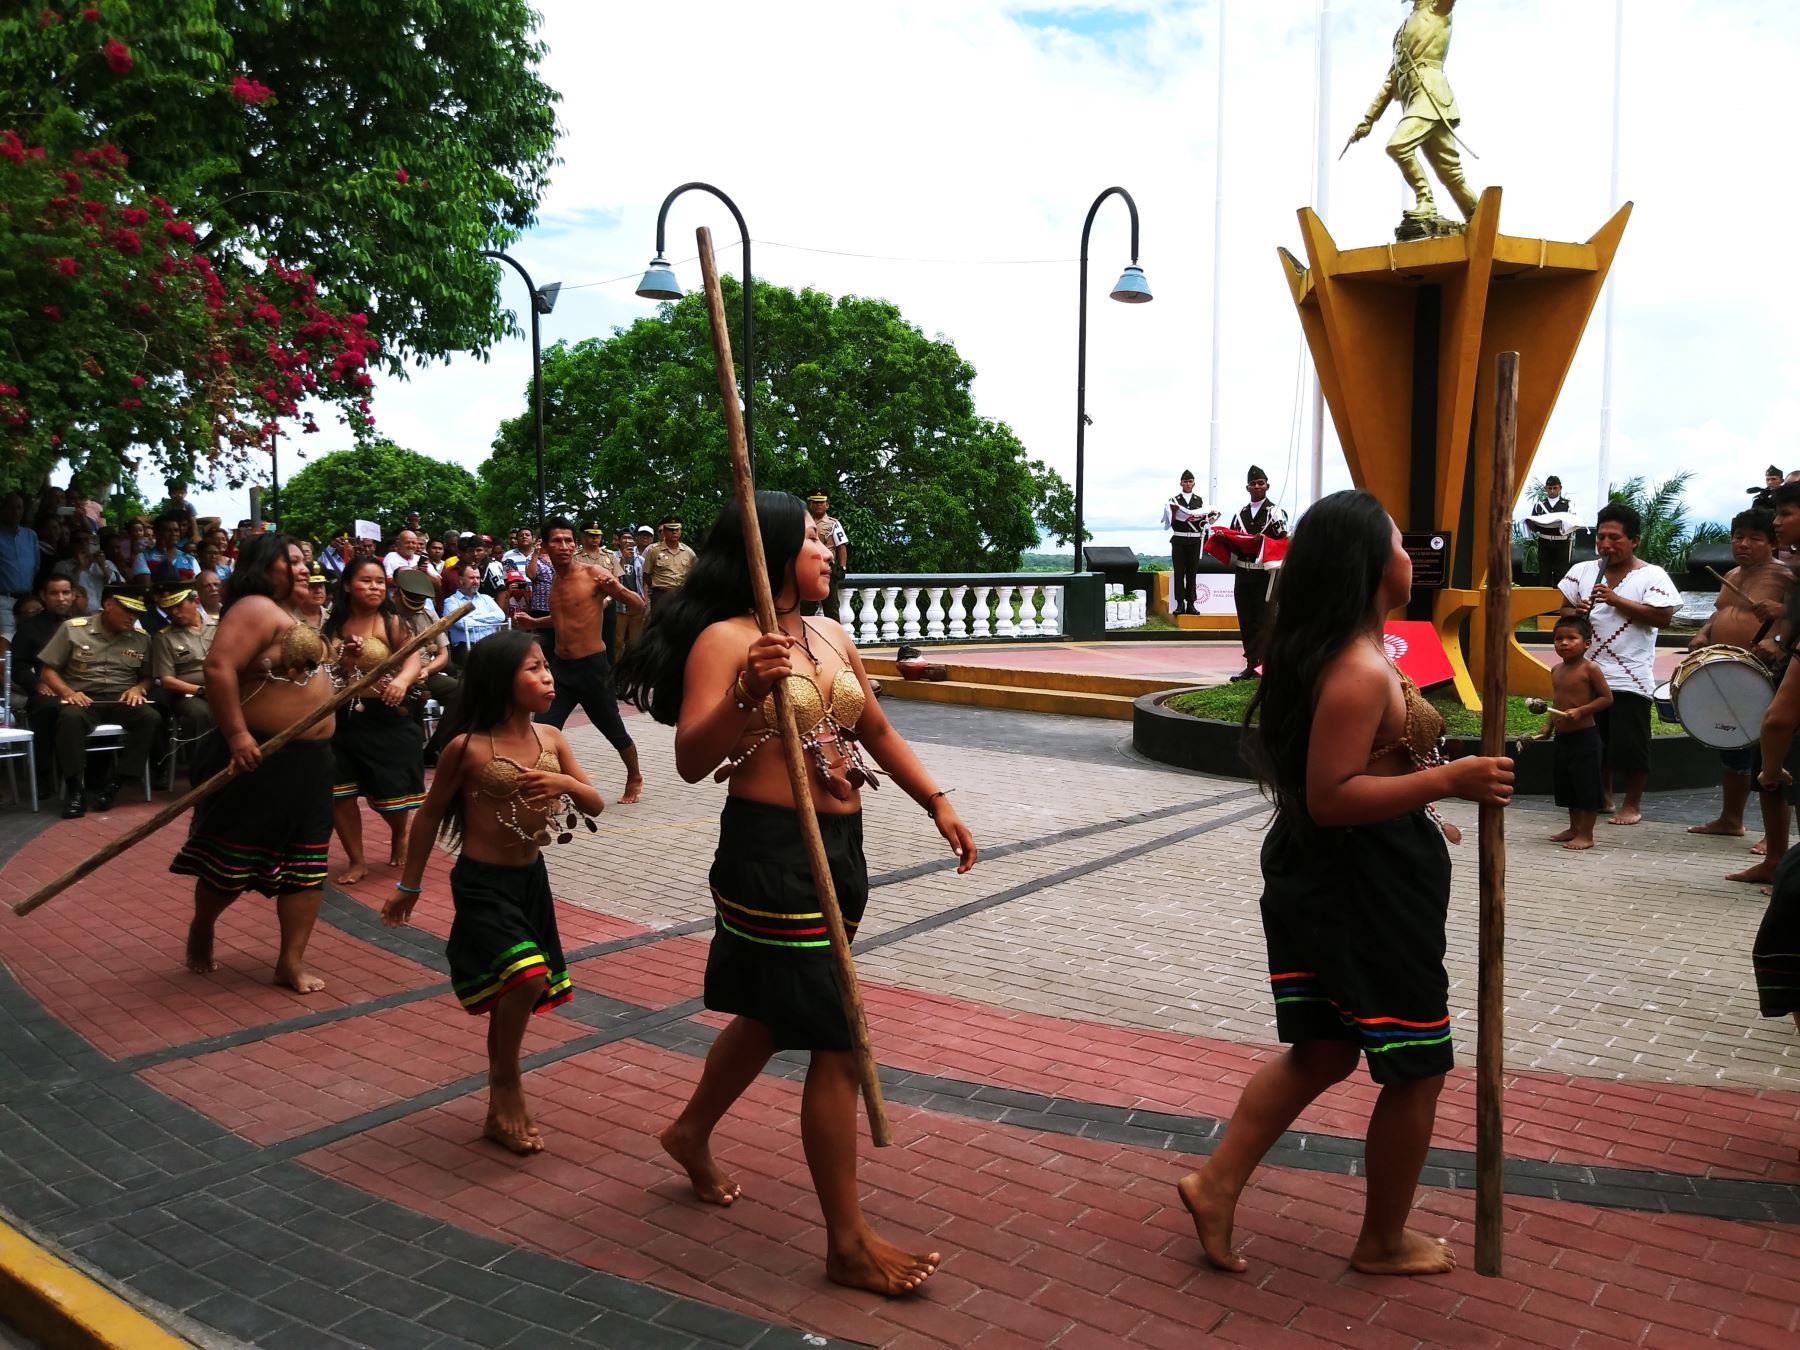 Ceremonia resalta la multiculturalidad de la Amazonía peruana. Foto: Luis Zuta Dávila.